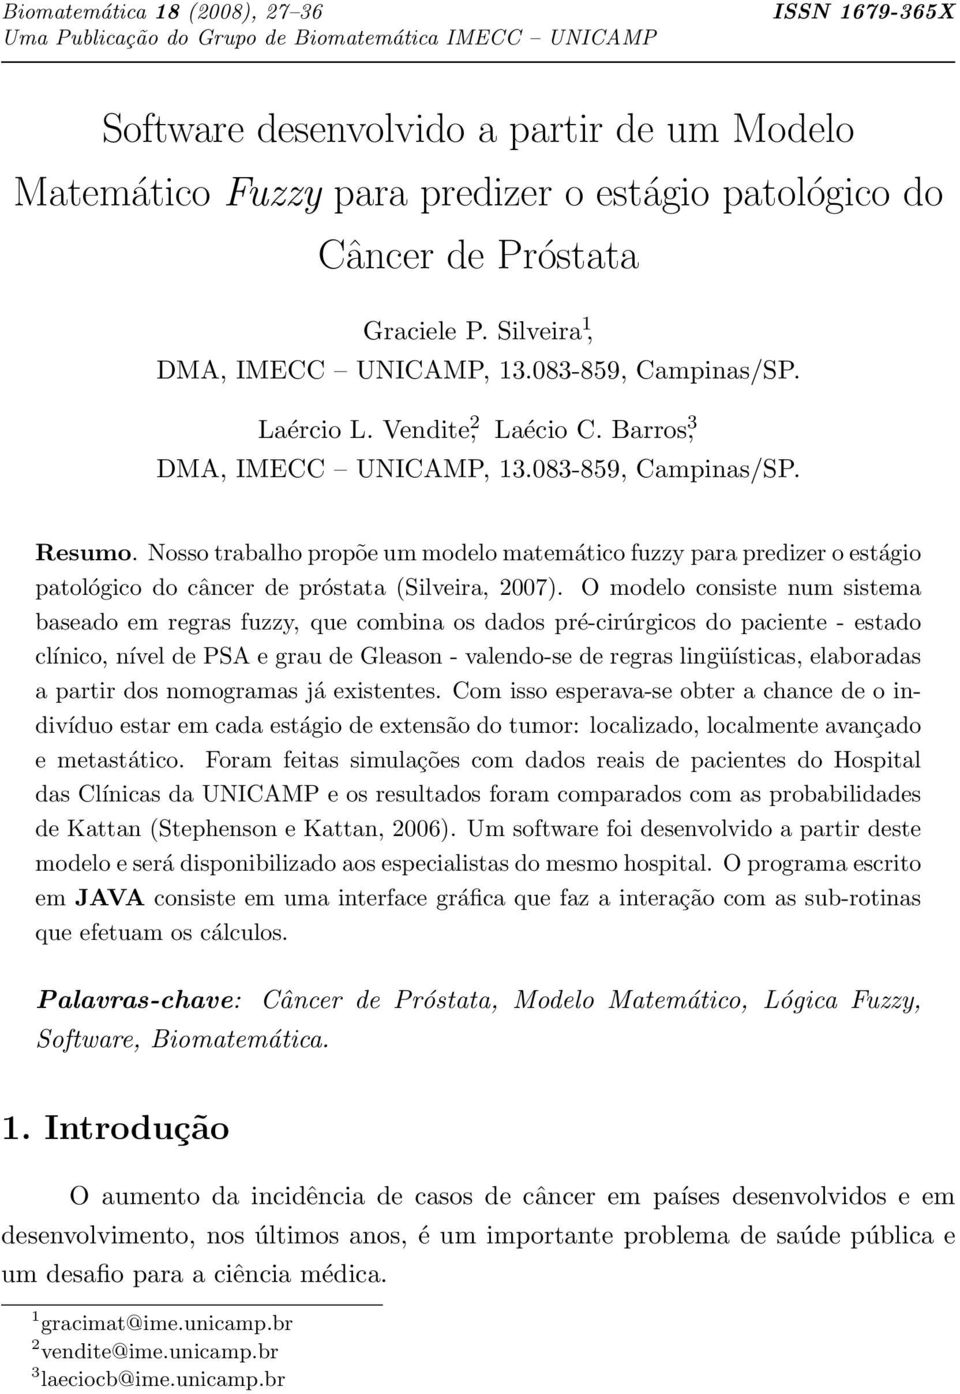 Nosso trabalho propõe um modelo matemático fuzzy para predizer o estágio patológico do câncer de próstata (Silveira, 2007).